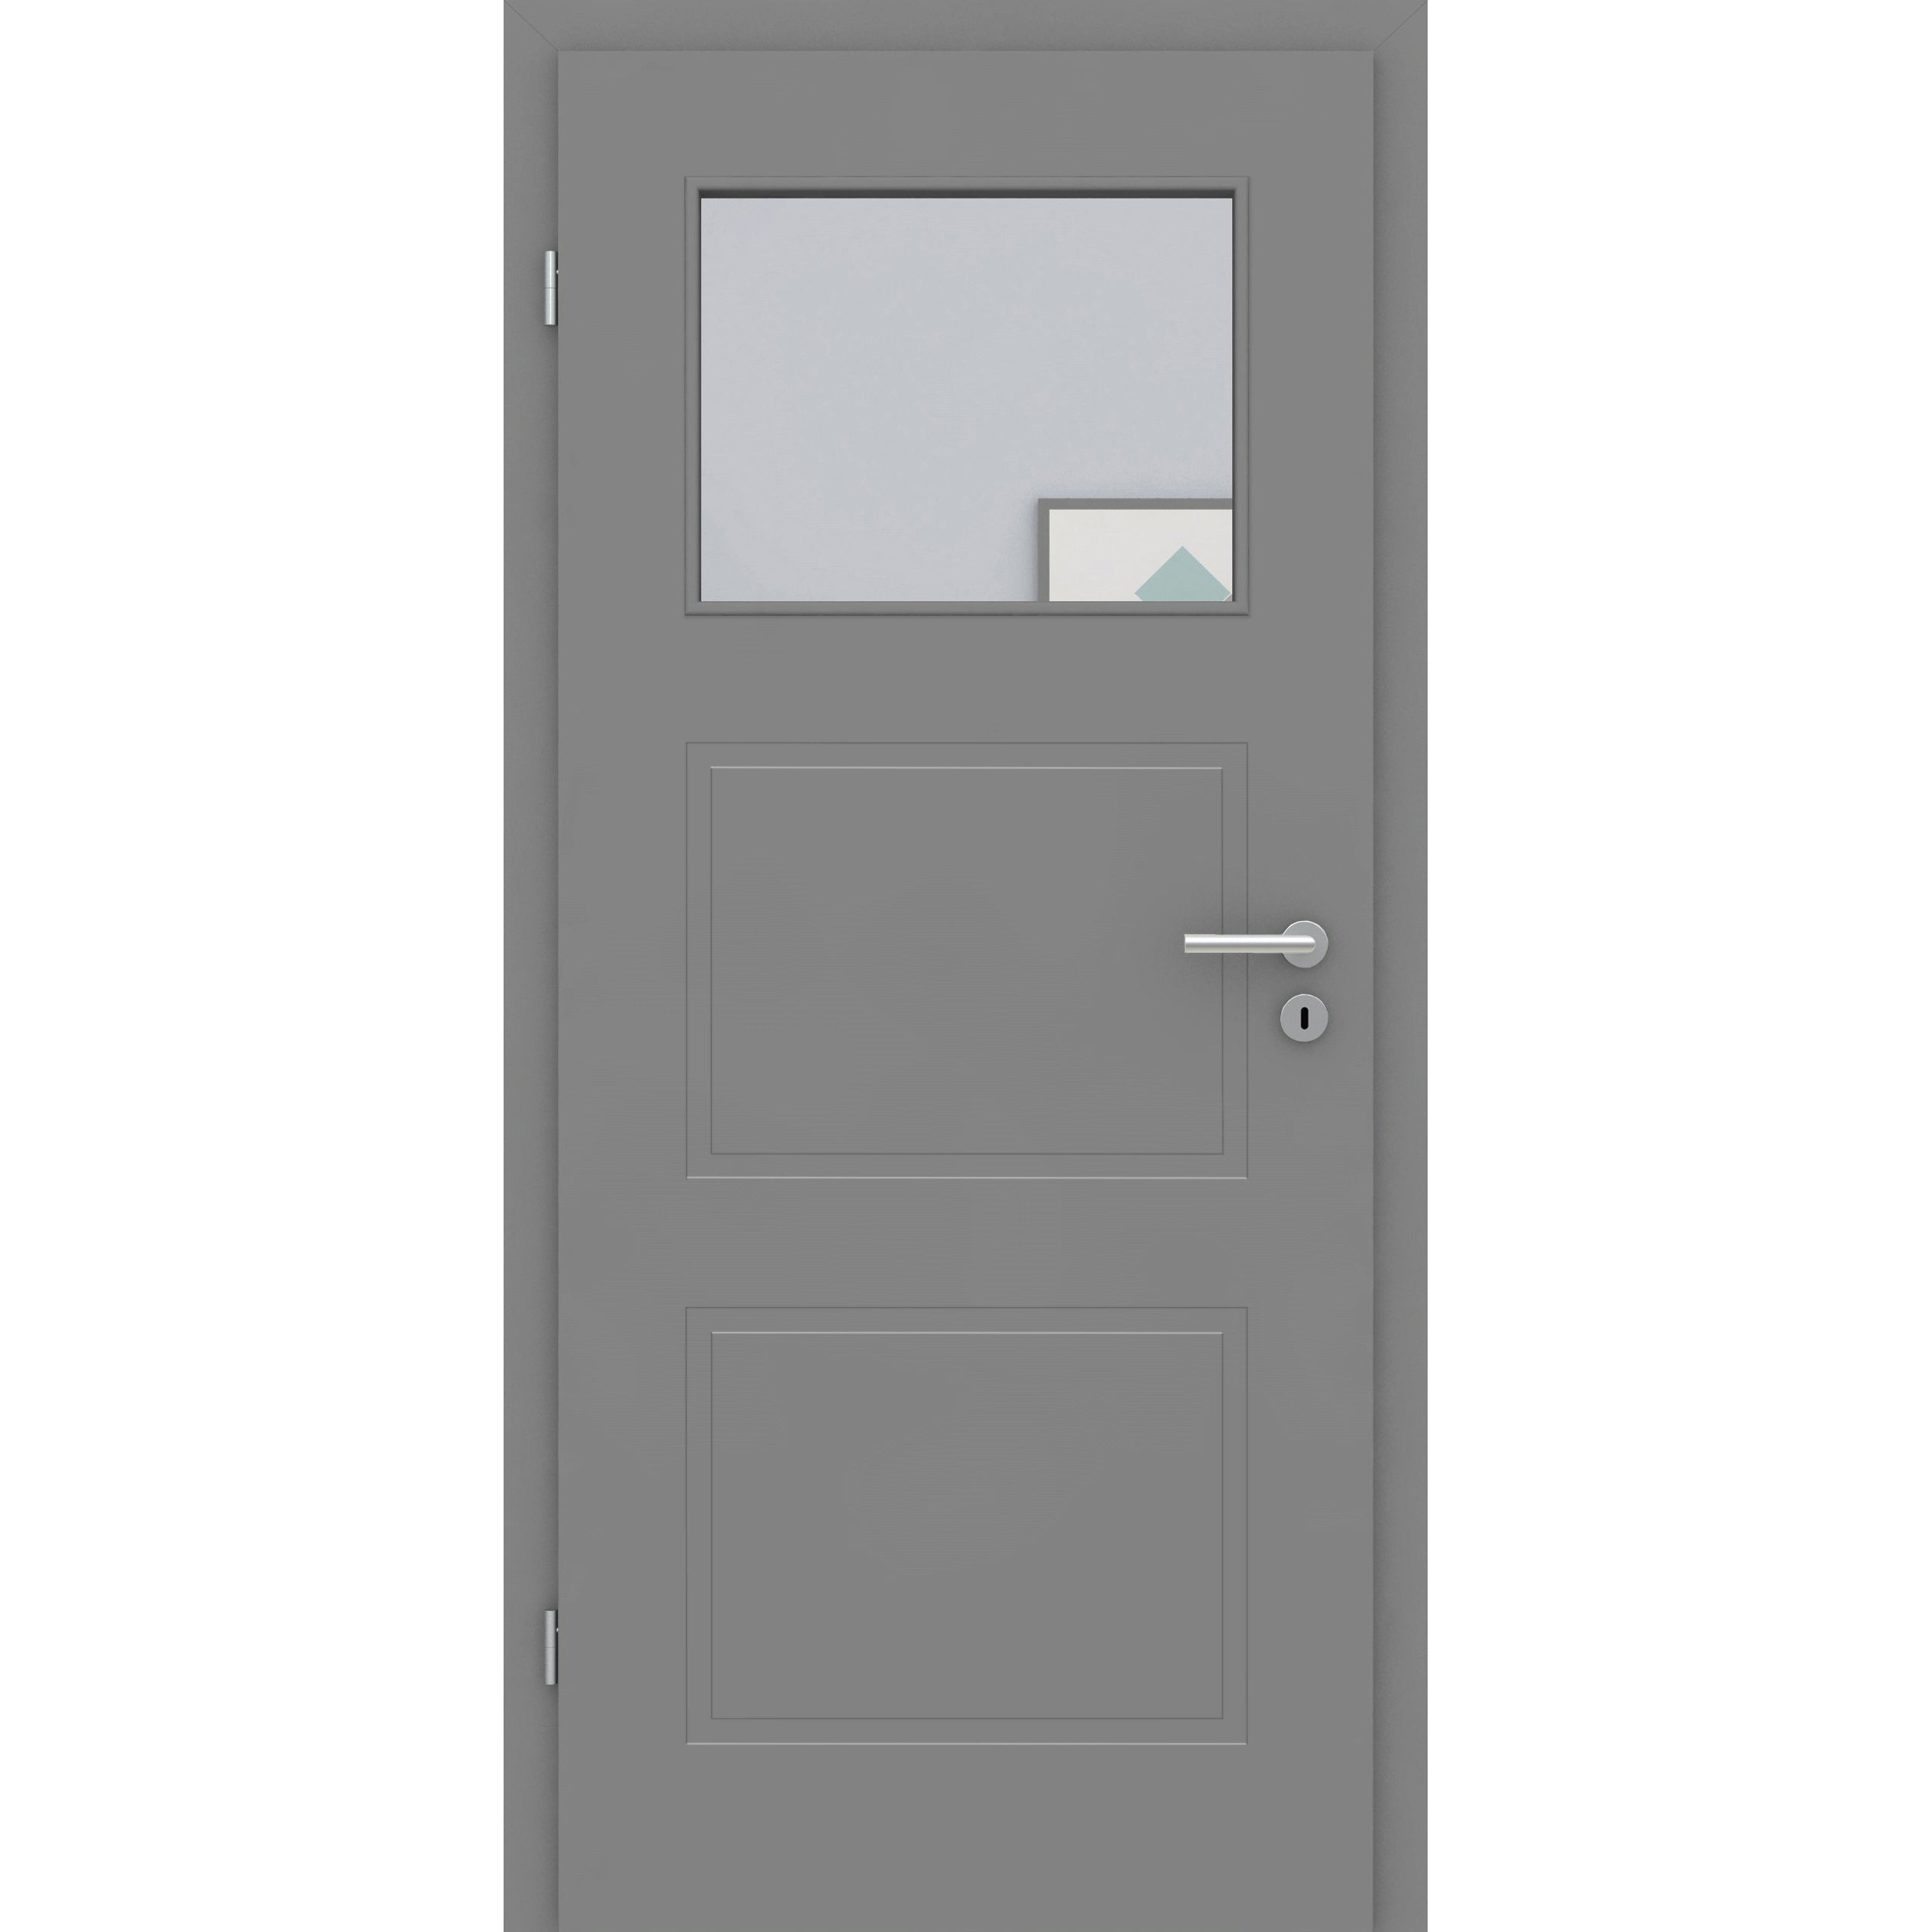 Zimmertür mit Lichtausschnitt grau 3 Kassetten Designkante - Modell Stiltür M37LA1